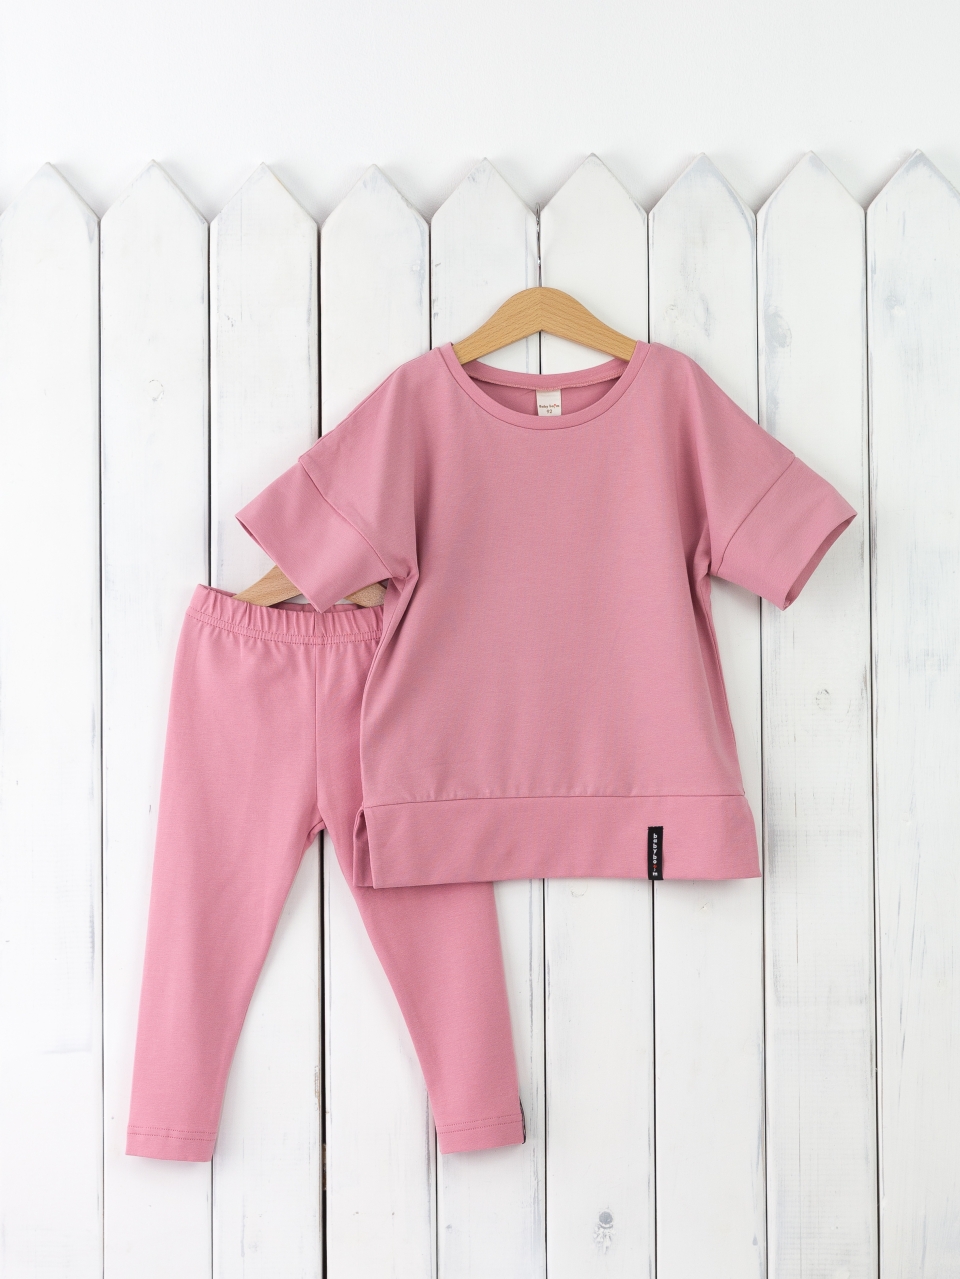 КД352/11-К Комплект для девочки р.110 футболка+легинсы/розовый зефир Бэби Бум - Пенза 